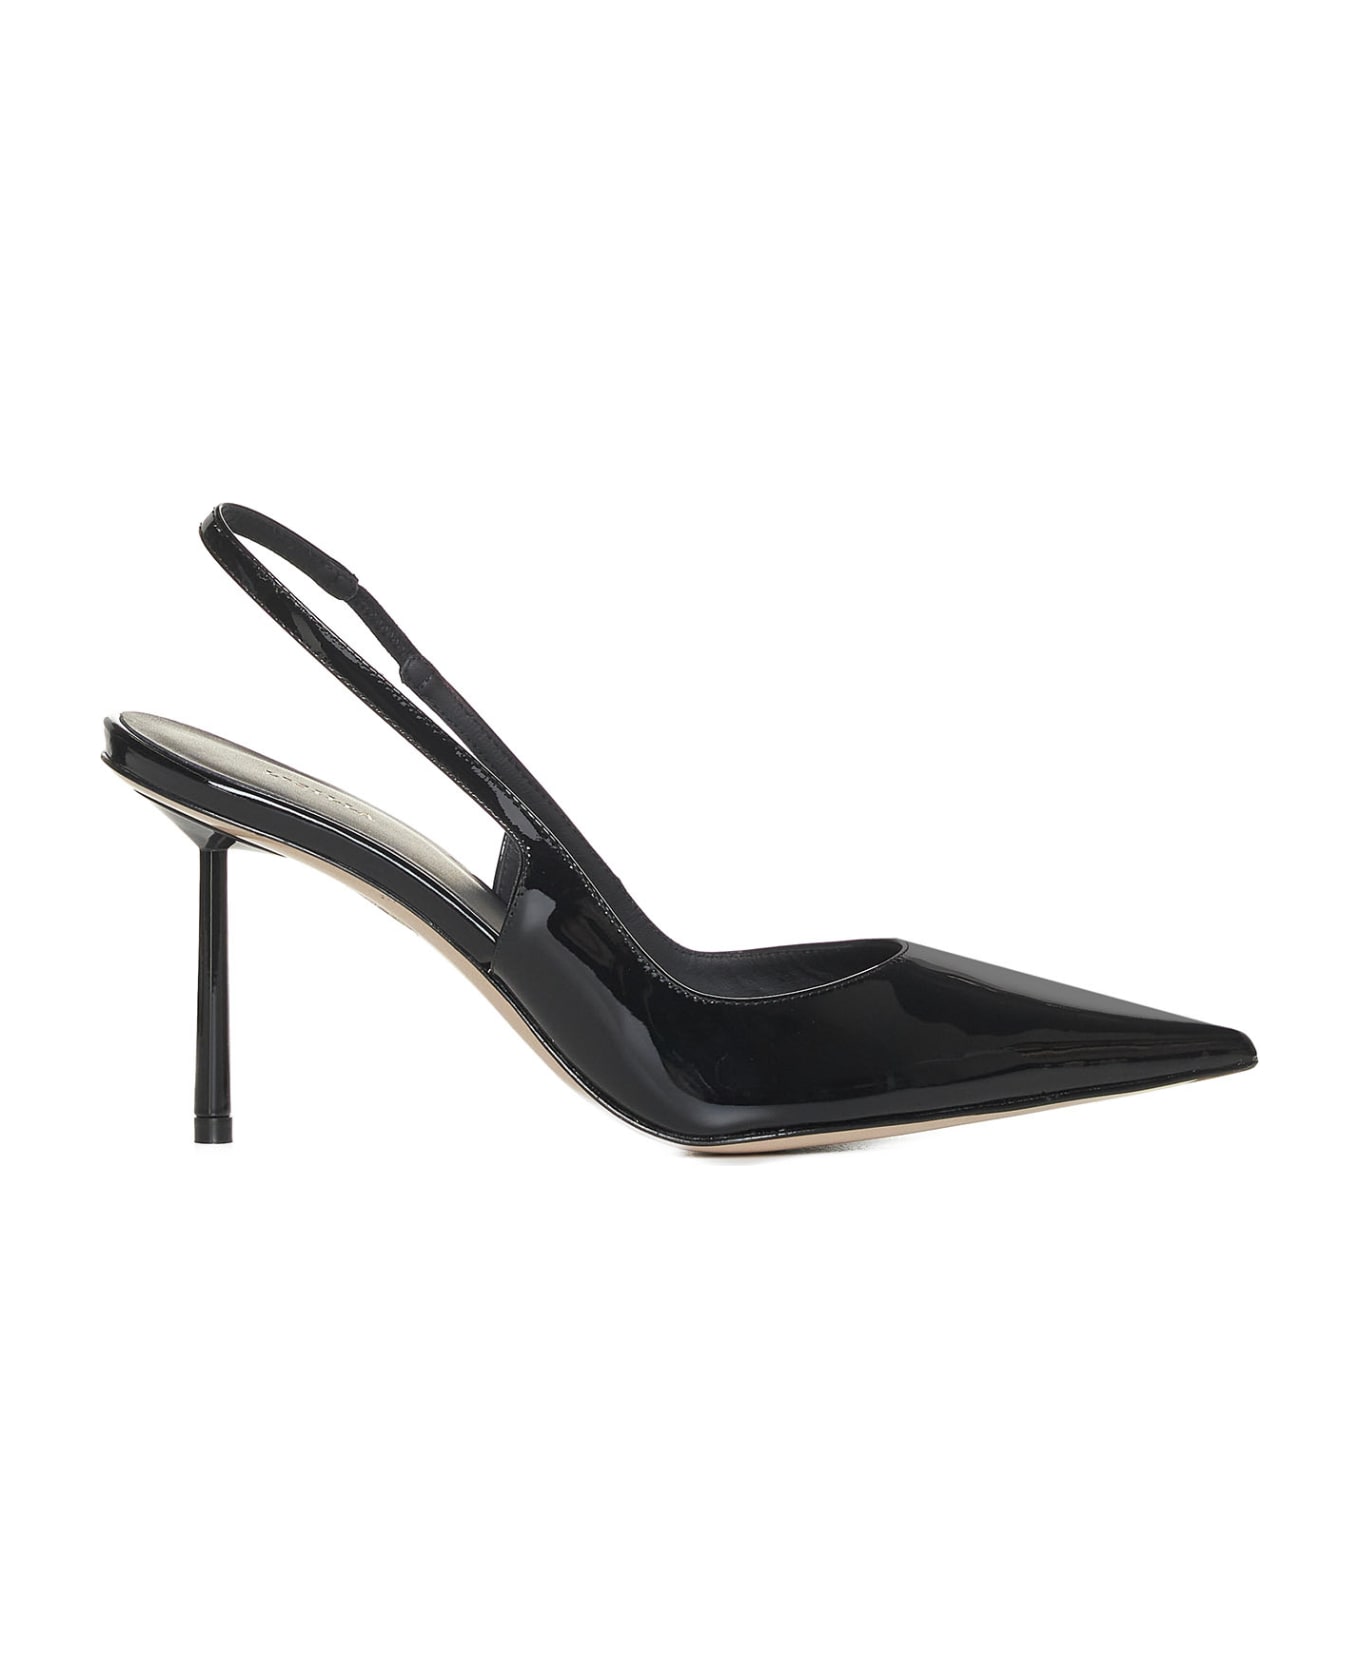 Le Silla High-heeled shoe - Nero